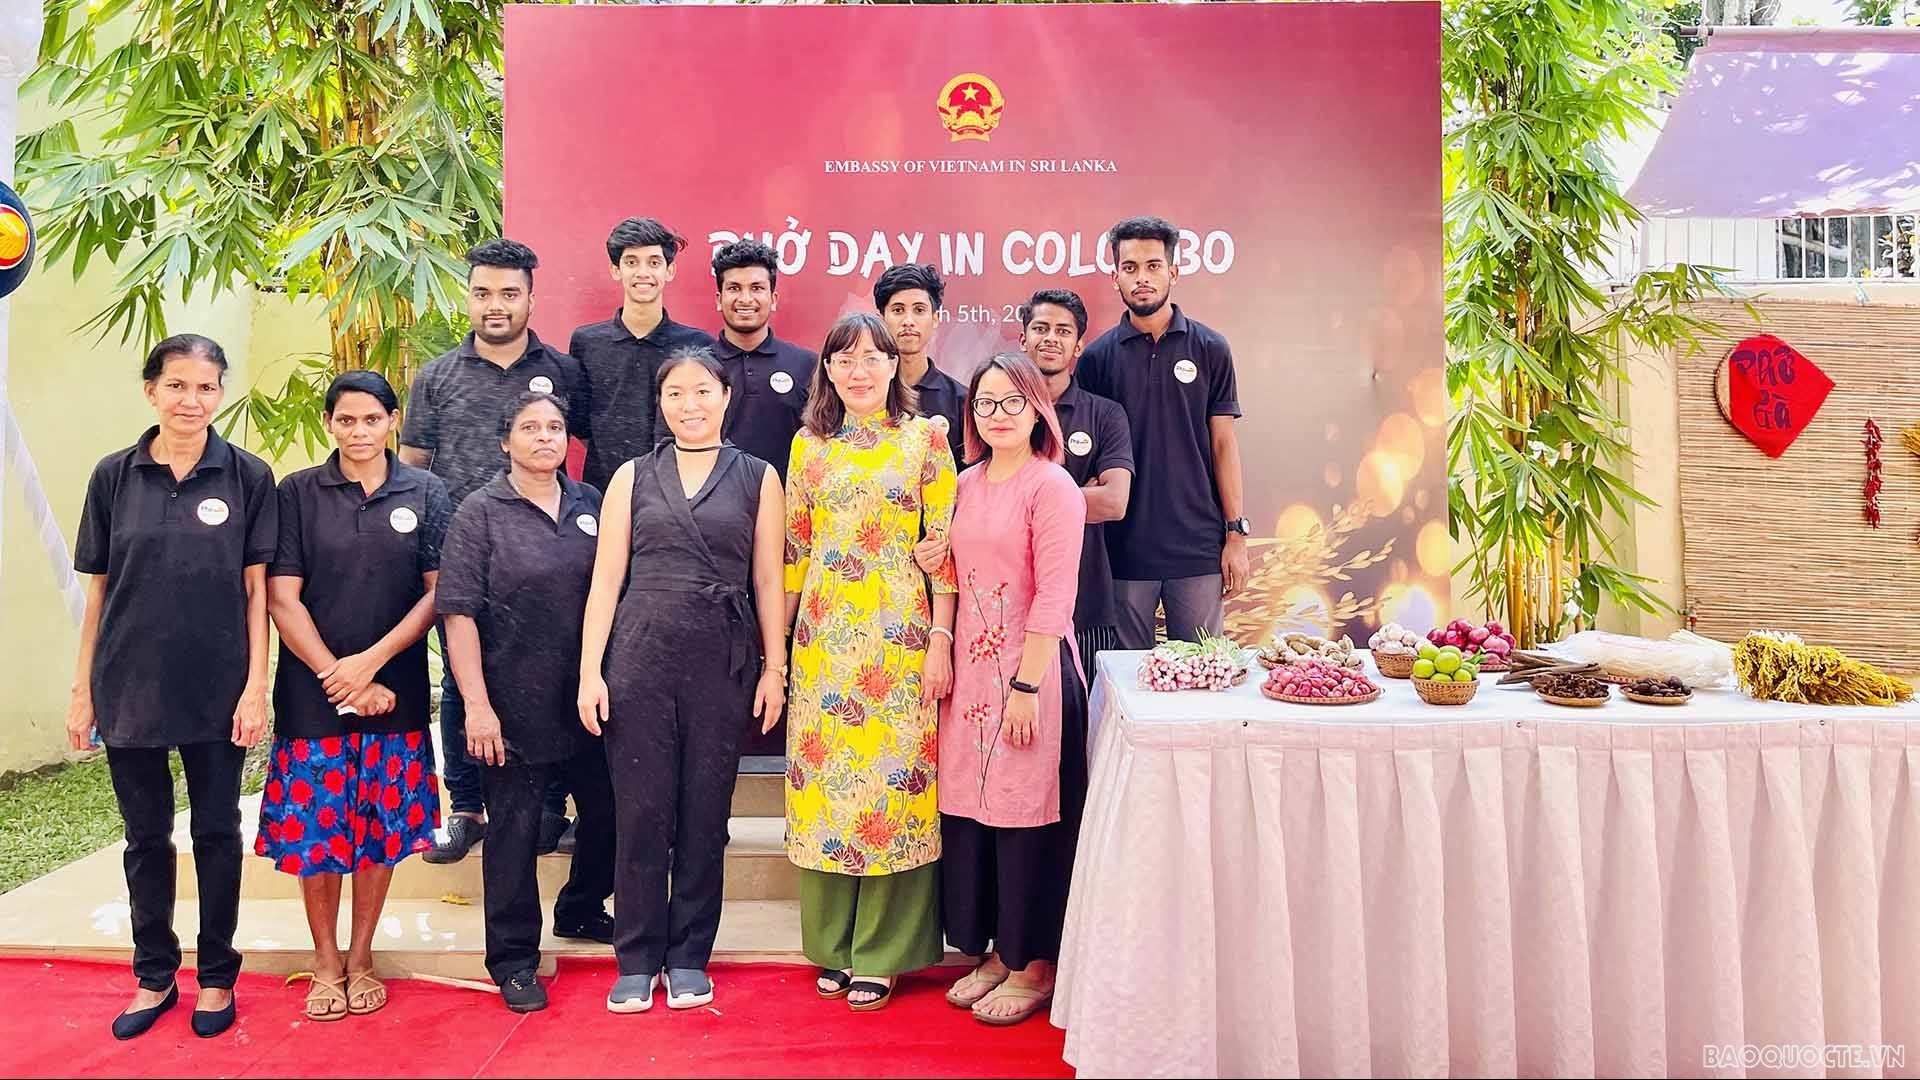 Ngày Phở Việt Nam tại Colombo, giới thiệu và tôn vinh ẩm thực Việt Nam